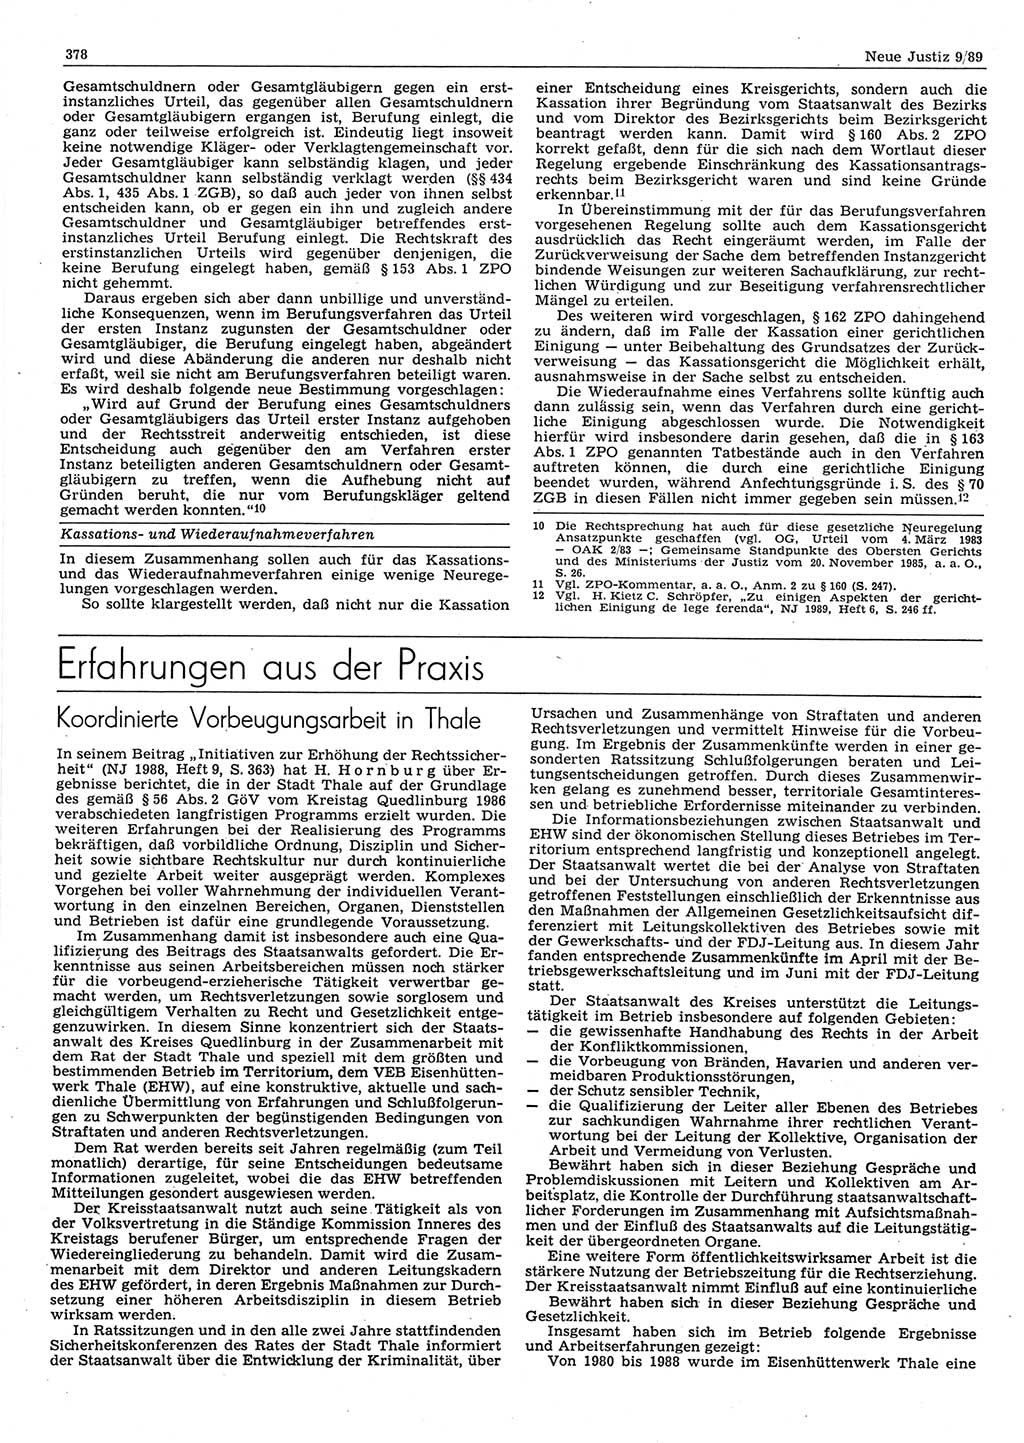 Neue Justiz (NJ), Zeitschrift für sozialistisches Recht und Gesetzlichkeit [Deutsche Demokratische Republik (DDR)], 43. Jahrgang 1989, Seite 378 (NJ DDR 1989, S. 378)